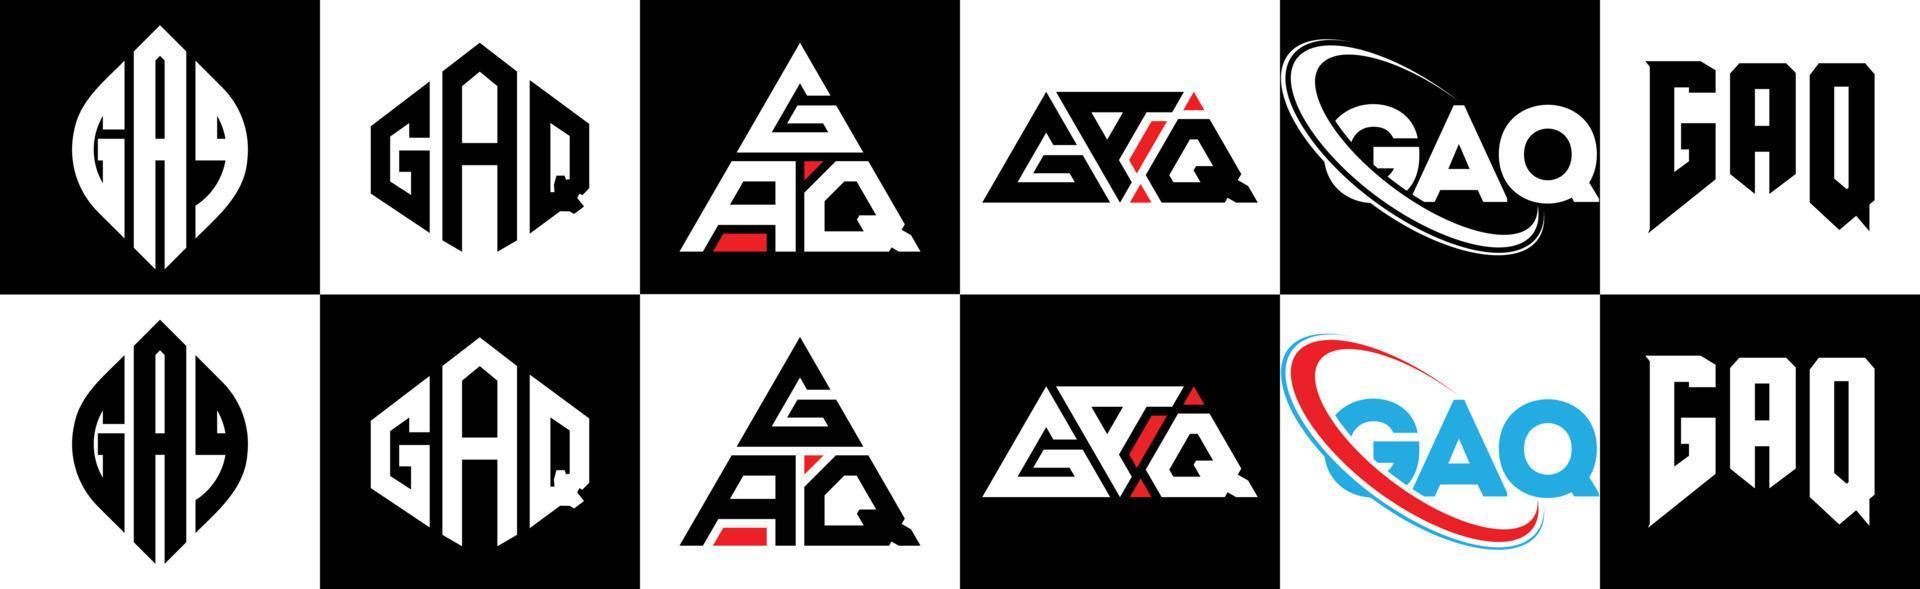 gaq brief logo ontwerp in zes stijl. gaq veelhoek, cirkel, driehoek, zeshoek, vlak en gemakkelijk stijl met zwart en wit kleur variatie brief logo reeks in een tekengebied. gaq minimalistische en klassiek logo vector